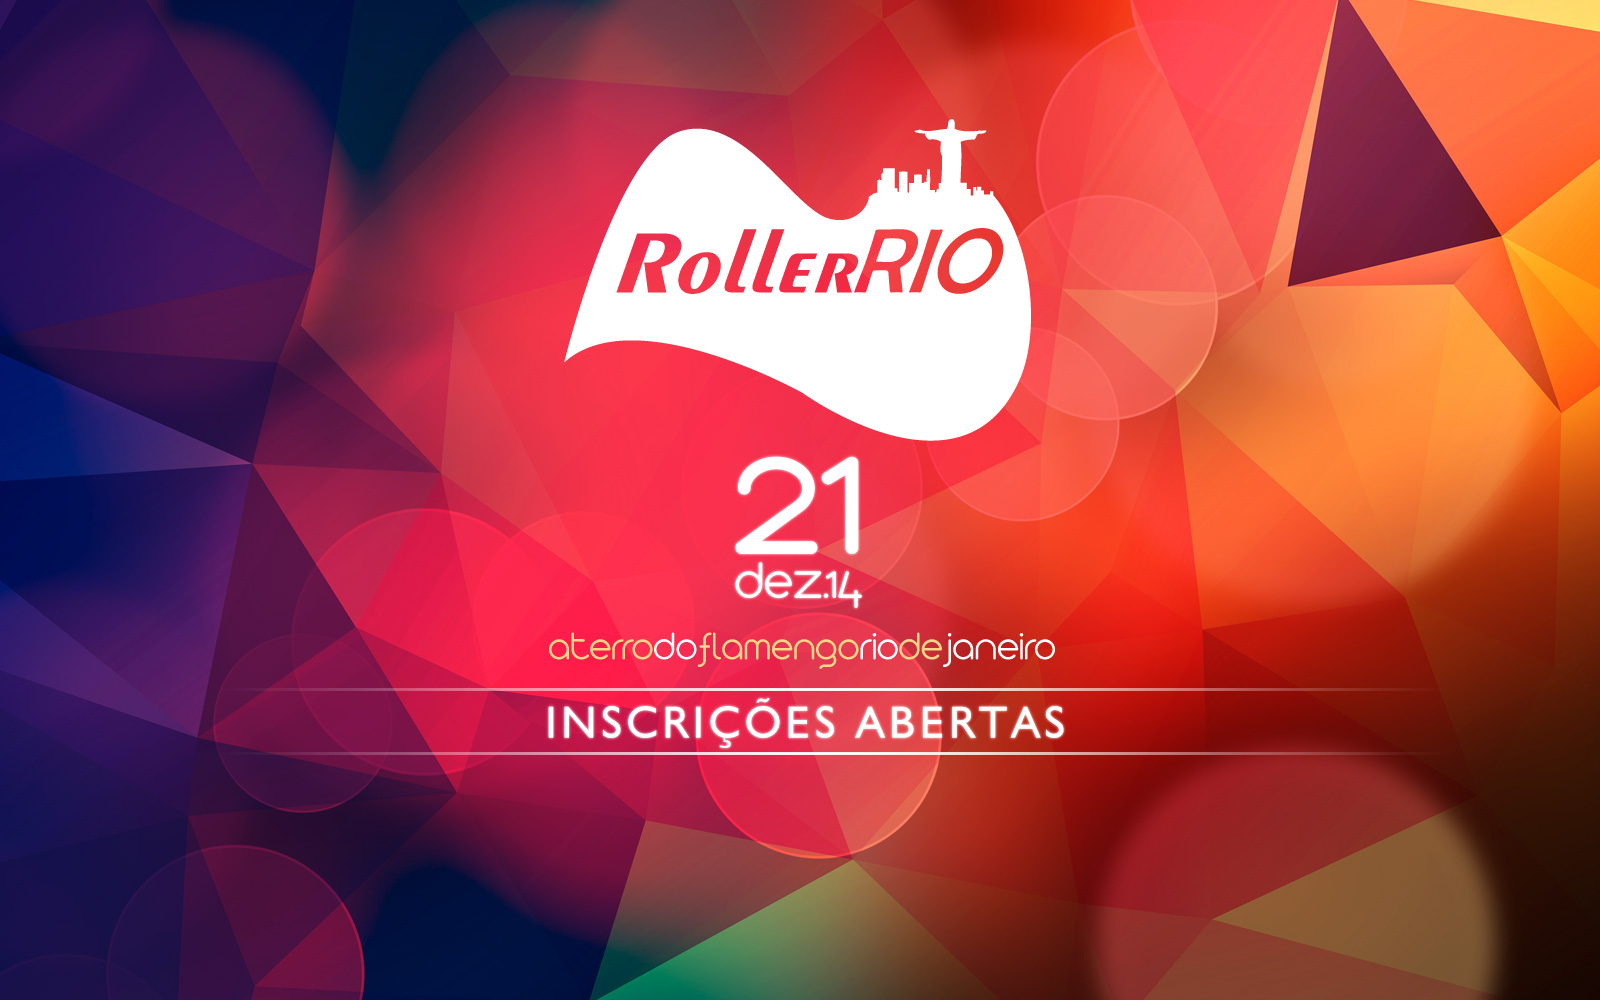 Rolling no Roller Rio